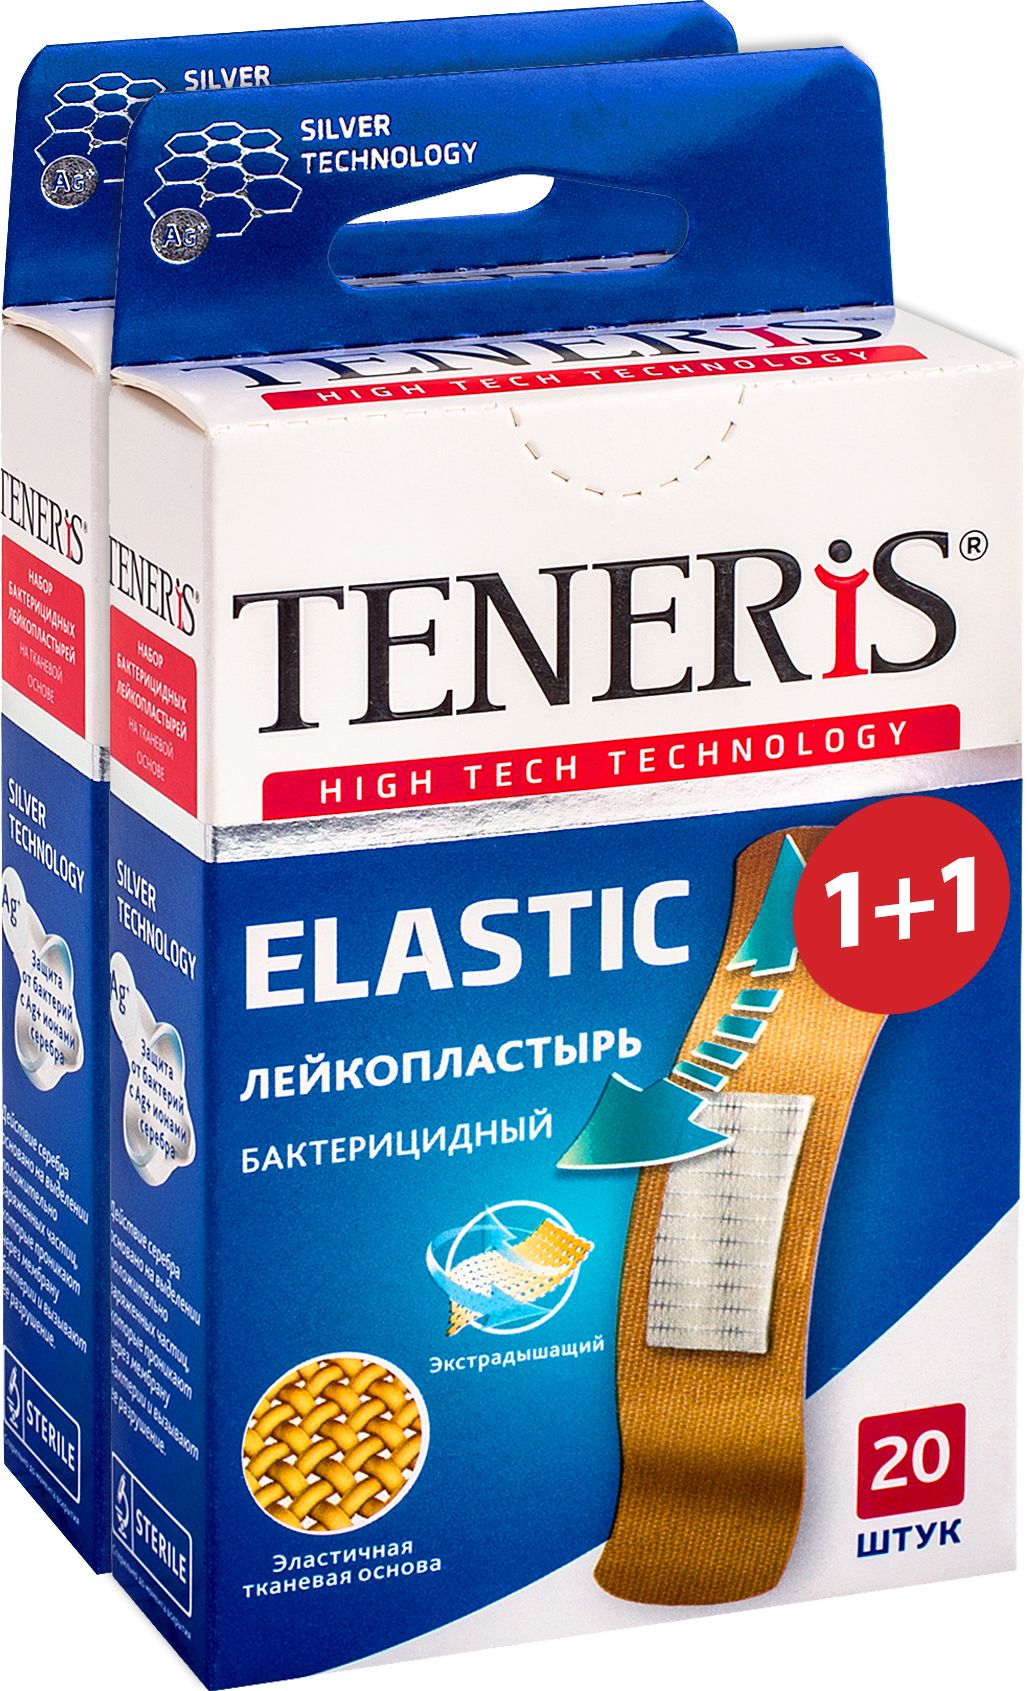 Купить TENERIS ELASTIC Лейкопластырь бактерицидный с ионами серебра на тканевой основе 20+20 шт., Лейкопластырь TENERIS ELASTIC бактерицидный с ионами серебра на тканевой основе 20+20 шт.